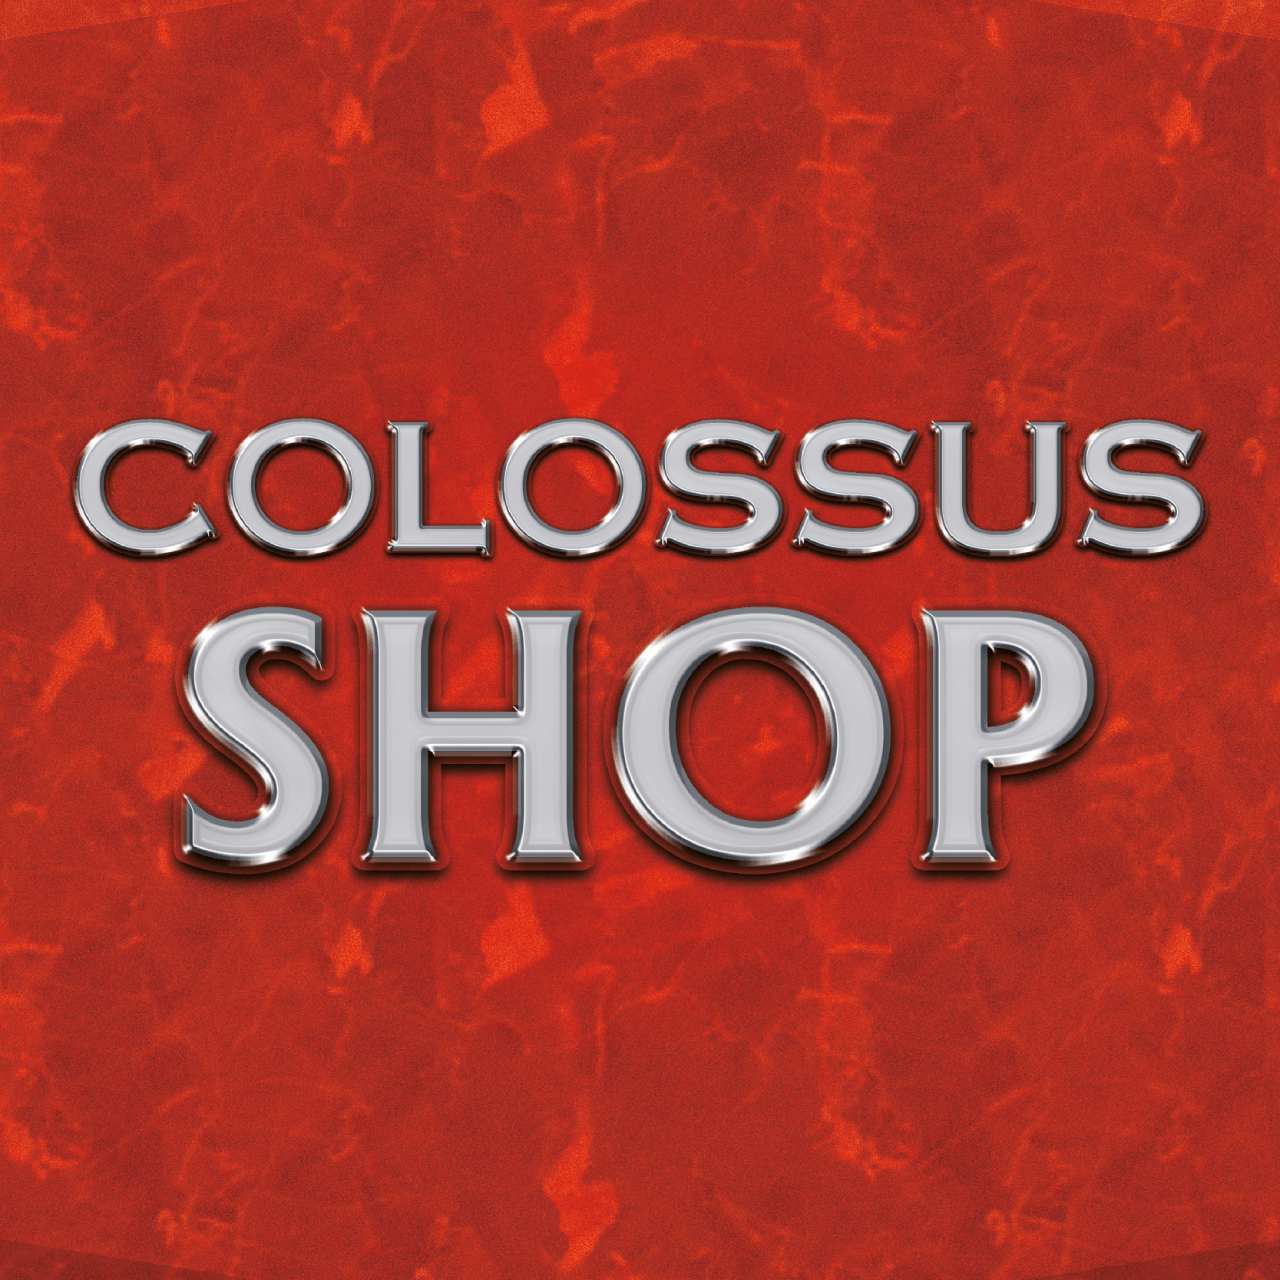 1X1 Colossus Shop Min